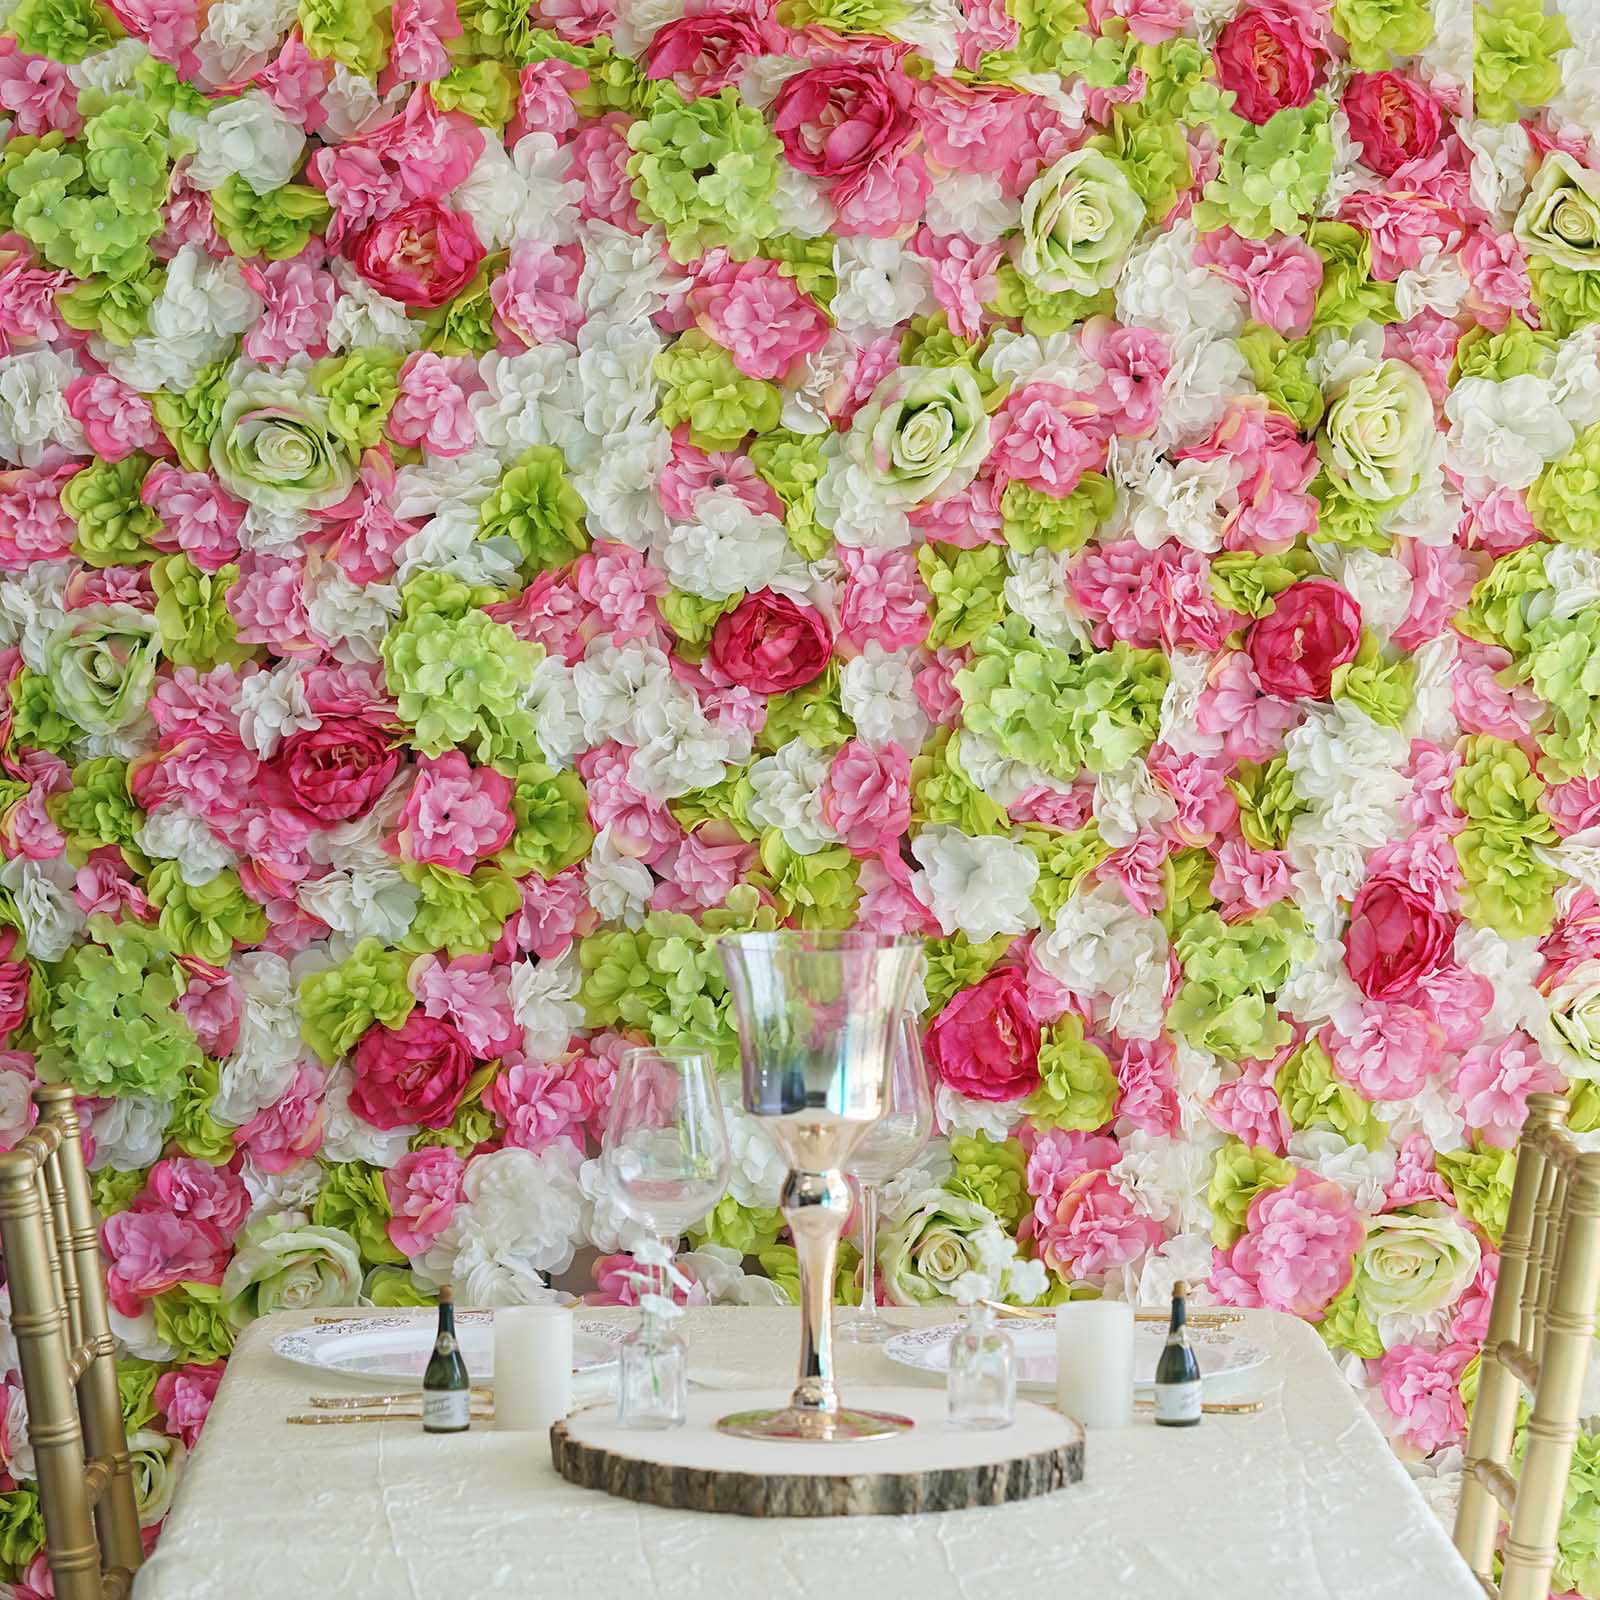 Fleurs Artificielles Wall Panel Floral Mariage fond Home venue Party Decor